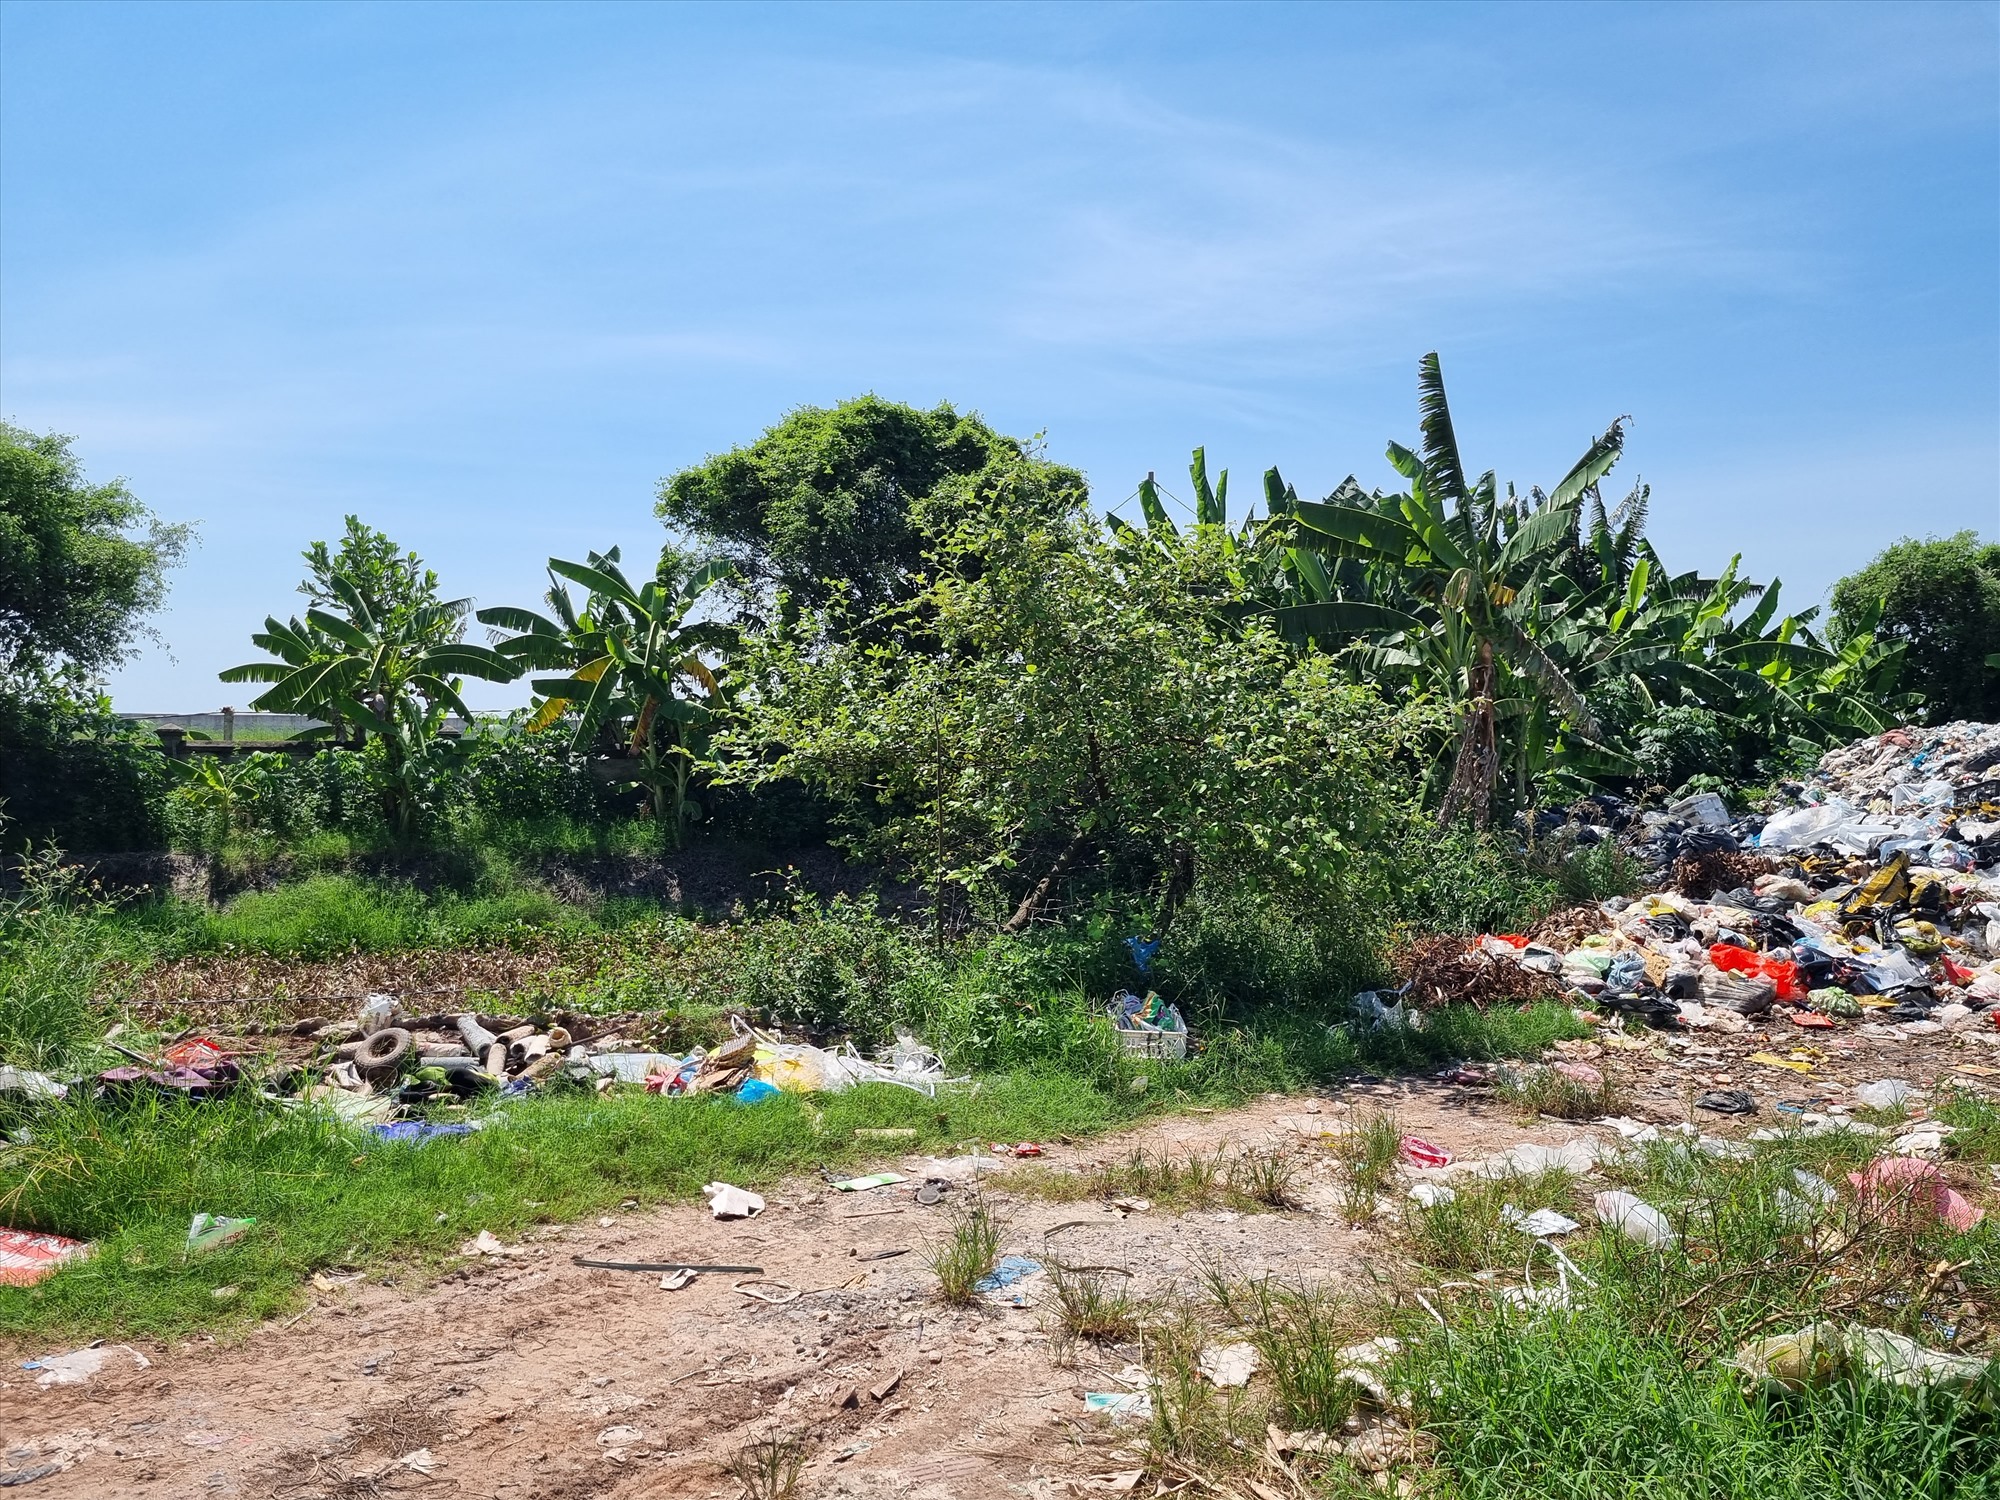 Để tìm hiểu cụ thể hơn về bãi chôn lấp rác thải xã Nghĩa Bình, phóng viên đã nhiều lần tới trụ sở và liên hệ với Chủ tịch UBND xã nhưng không nhận được hồi âm.